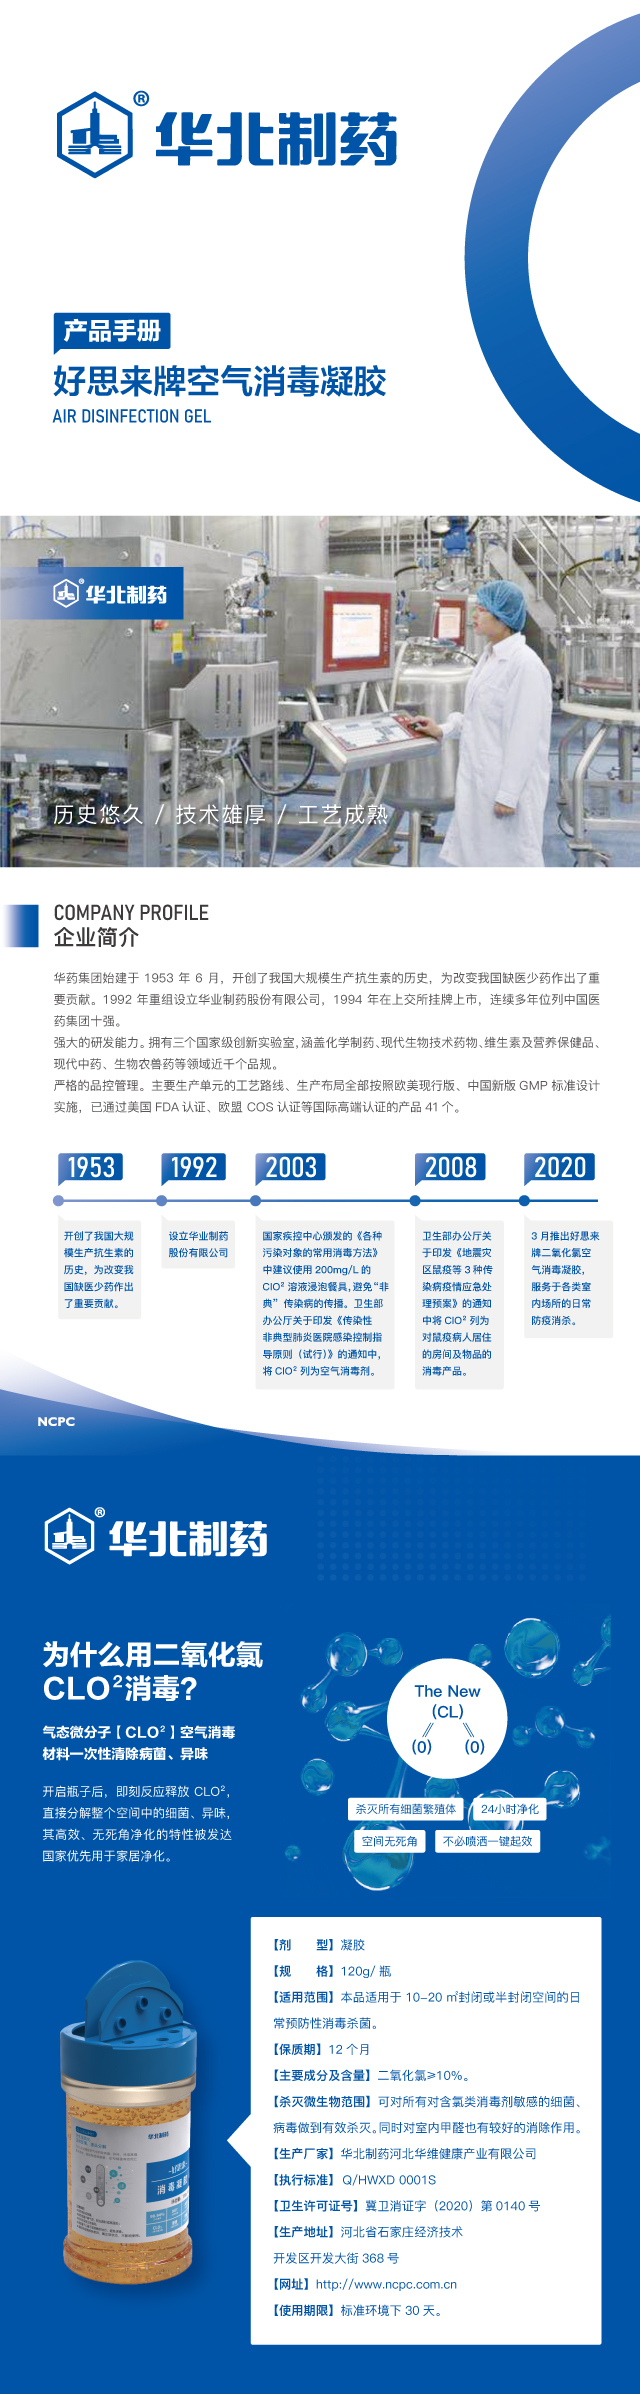 華北制藥空氣消毒凝膠產品包裝及折頁設計圖3